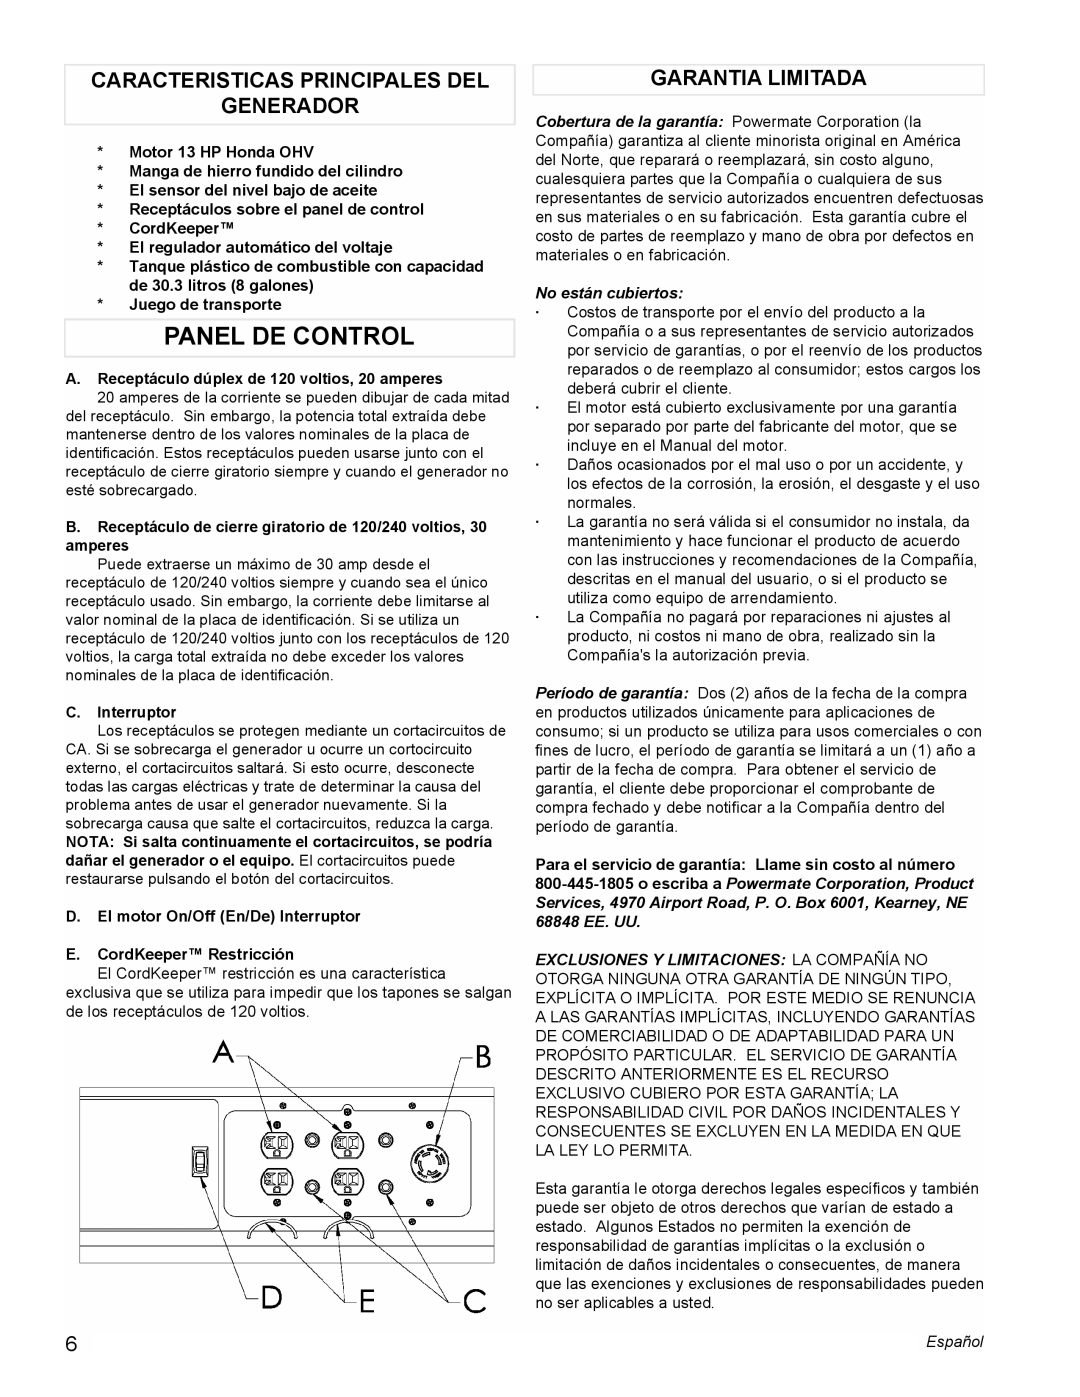 Powermate PM0496500.02 manual Panel De Control, Caracteristicas Principales Del Generador, Garantia Limitada 